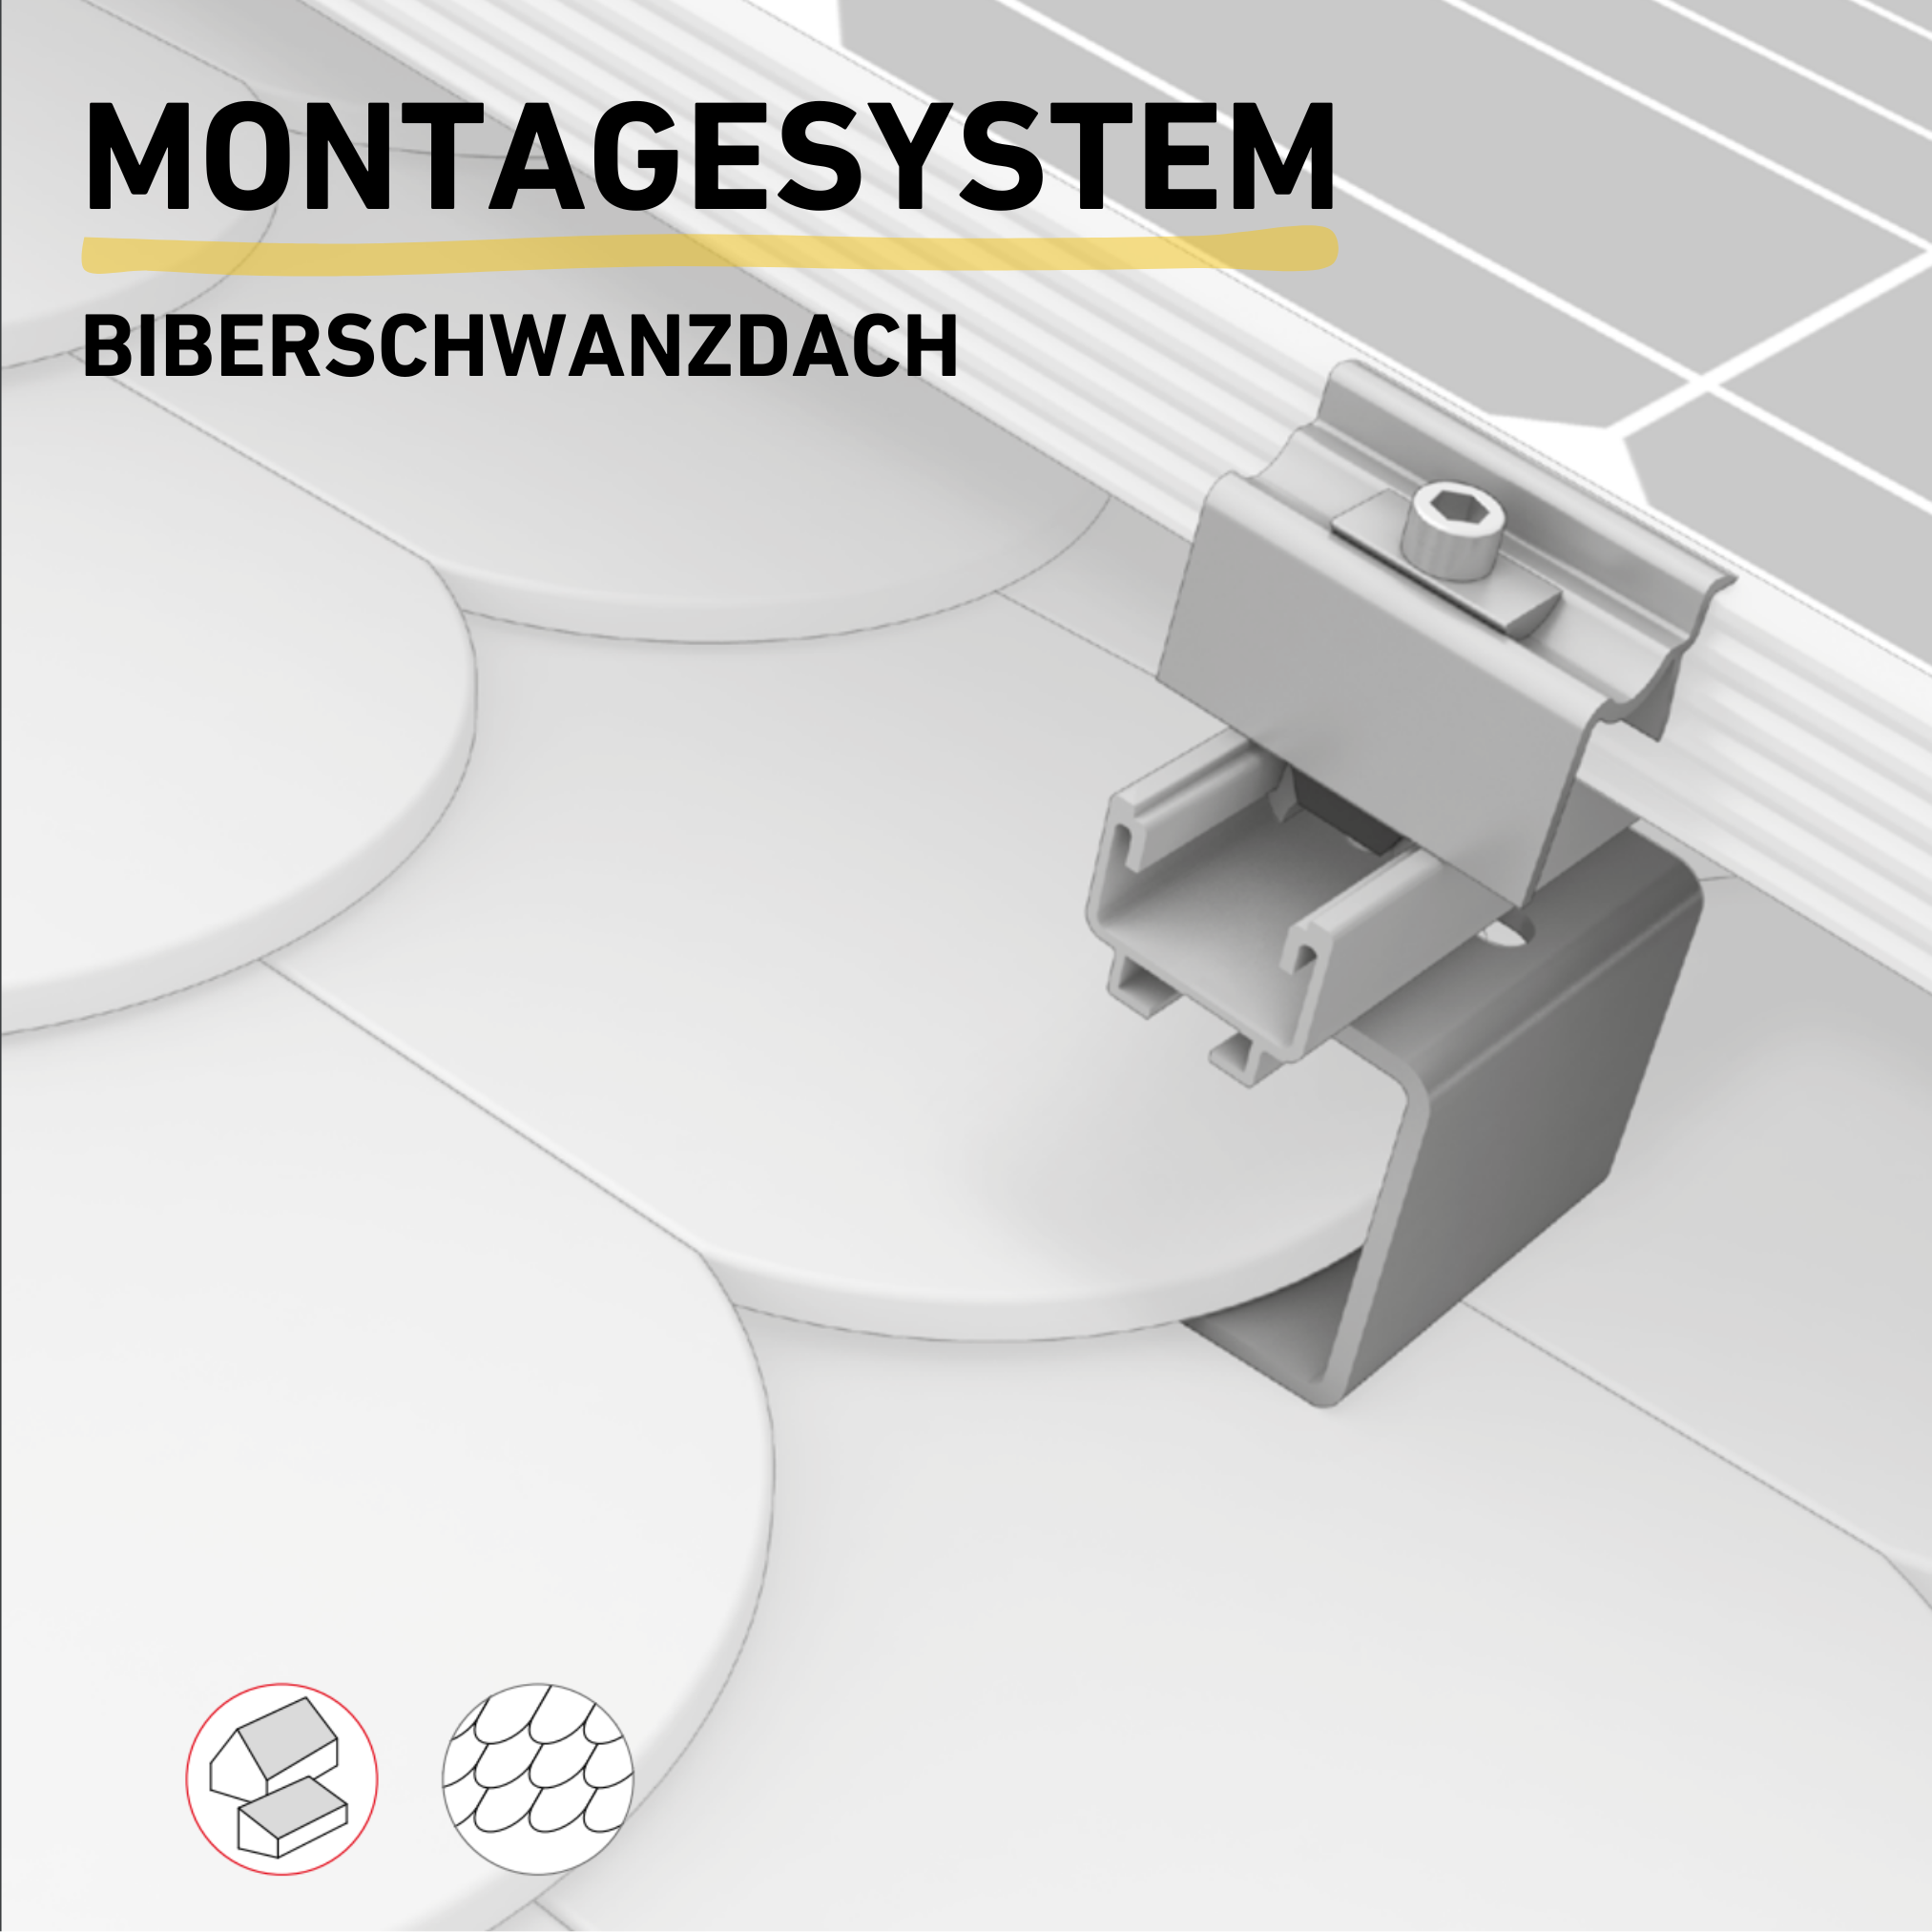 Balkonkraftwerk Montagesystem Biberschwanzdach Produktbild Darstellung